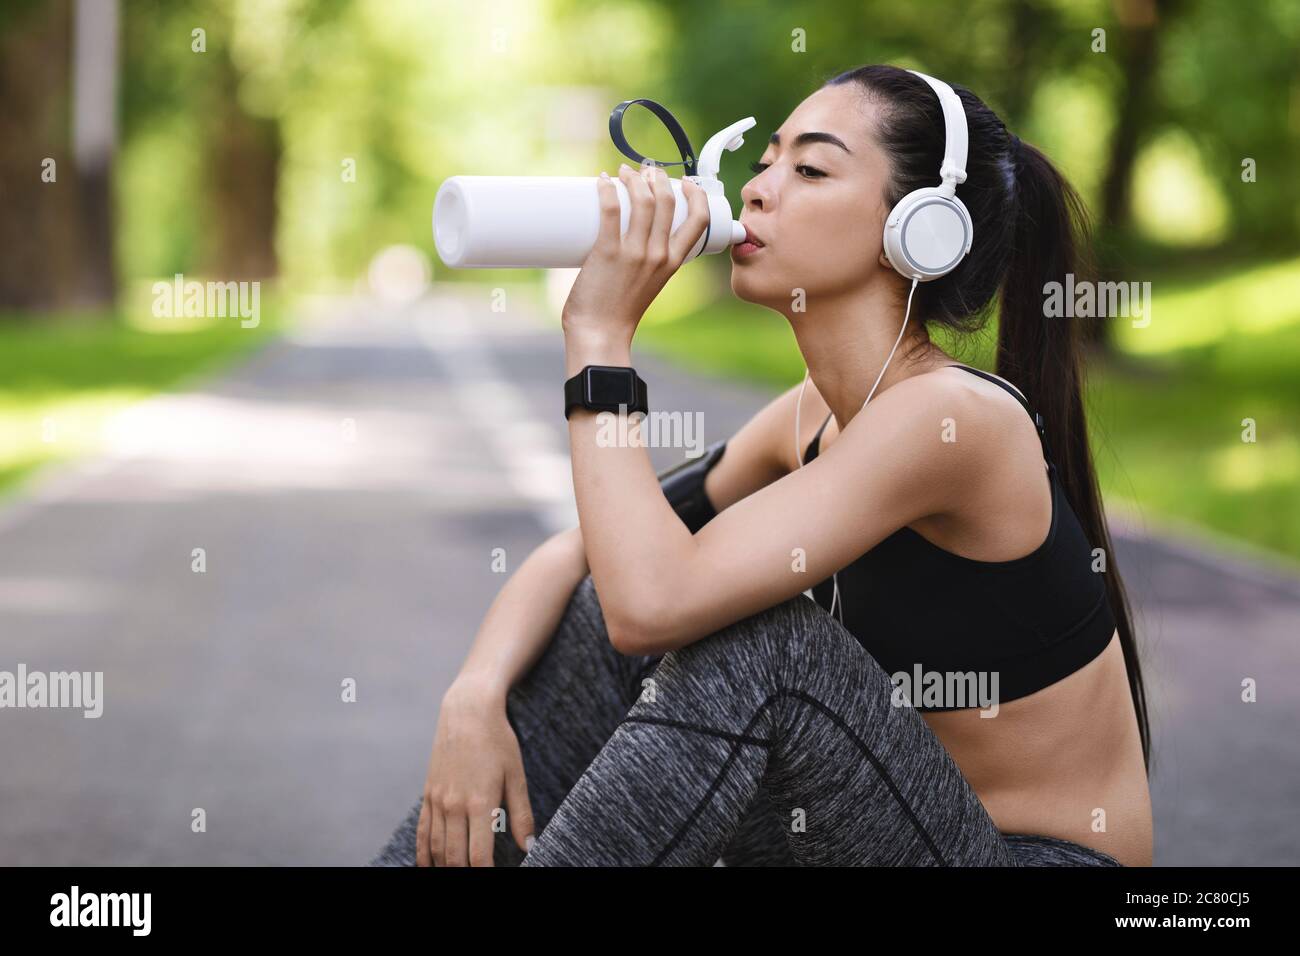 Soif après l'entraînement. Jeune fille asiatique buvant de l'eau, se reposant après des hors-soors de jogging Banque D'Images